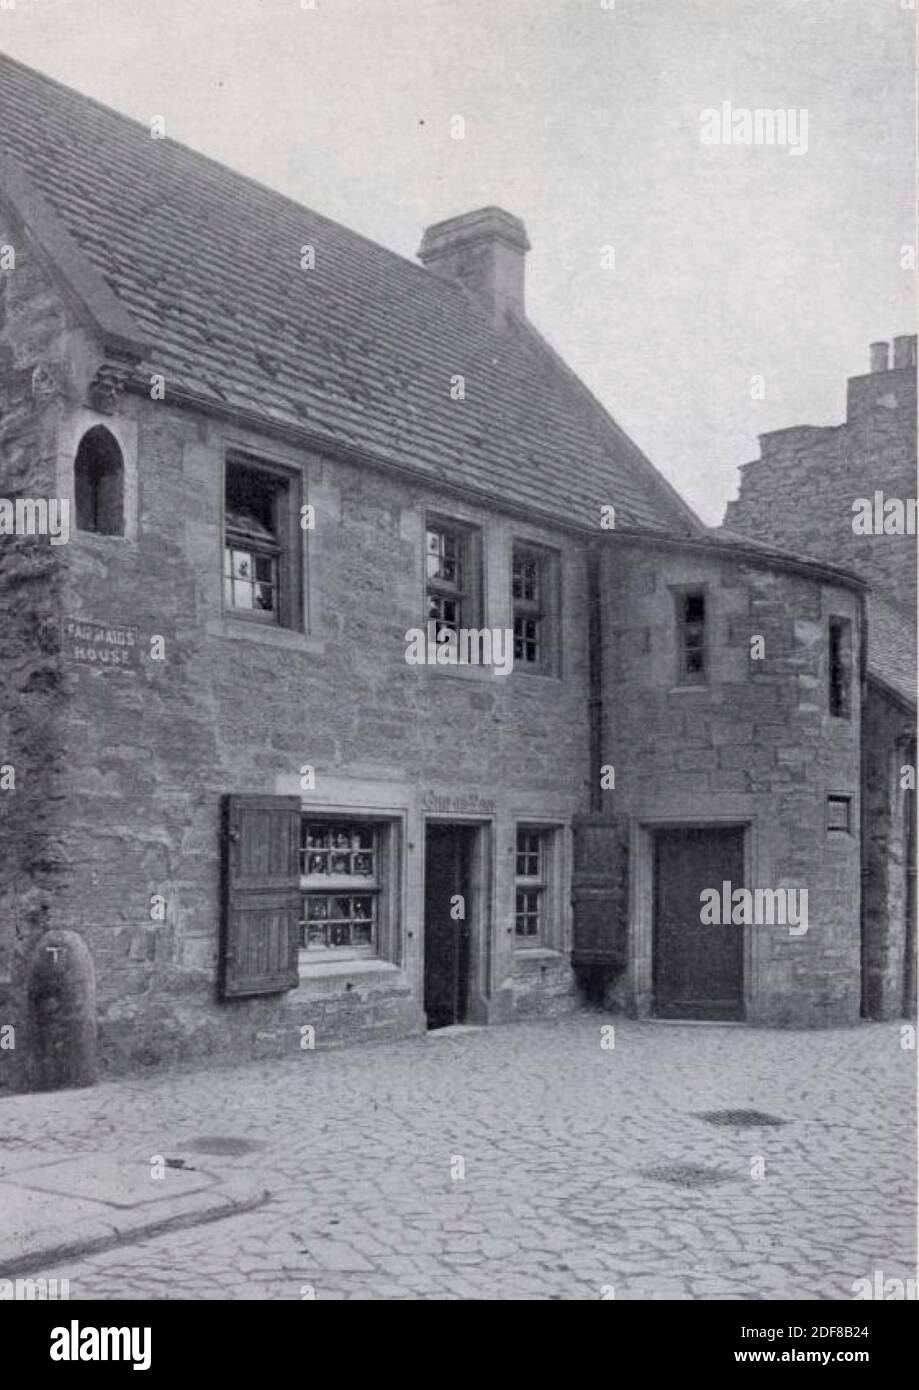 Antikes Vintage-Foto der schönen Magd von perth's Haus in Perth, Schottland. Mit dem gleichnamigen Roman von Sir Walter Scott. Stockfoto